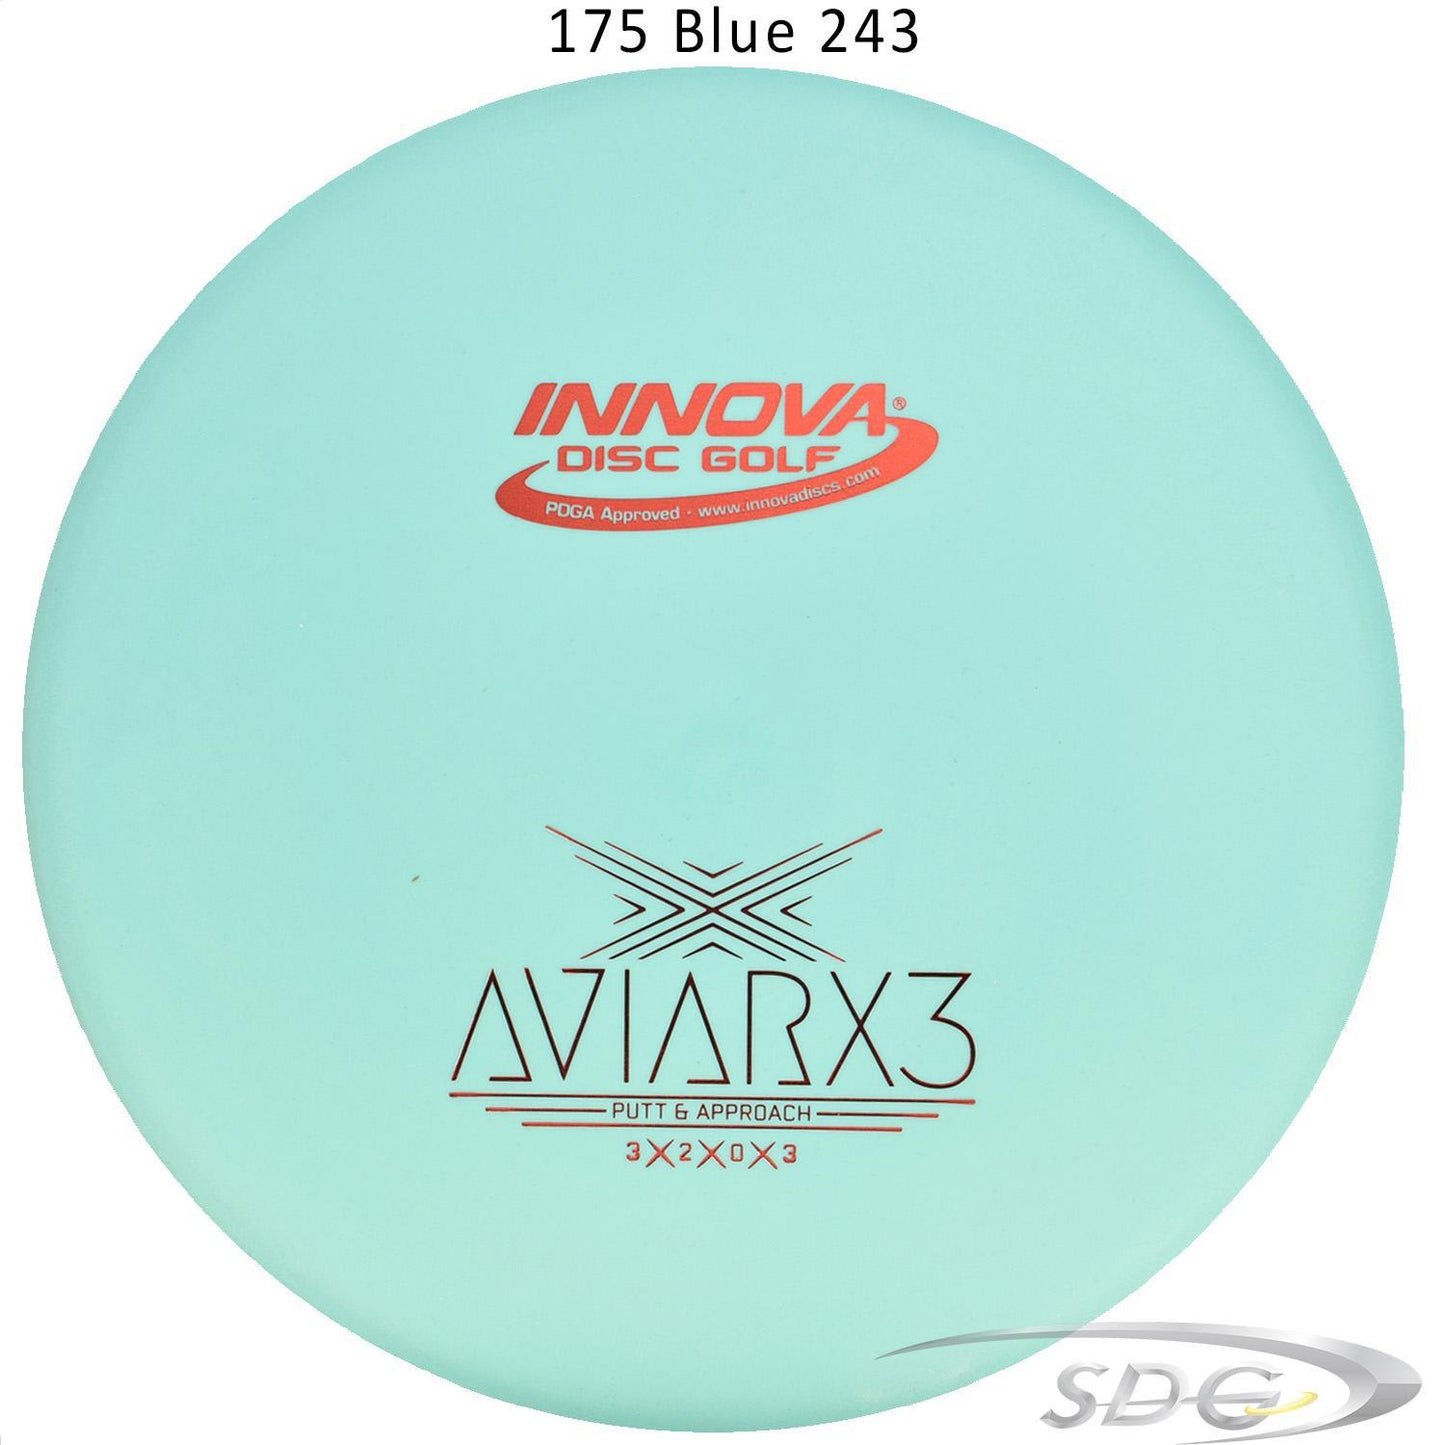 innova-dx-aviarx3-disc-golf-putter 175 Blue 243 